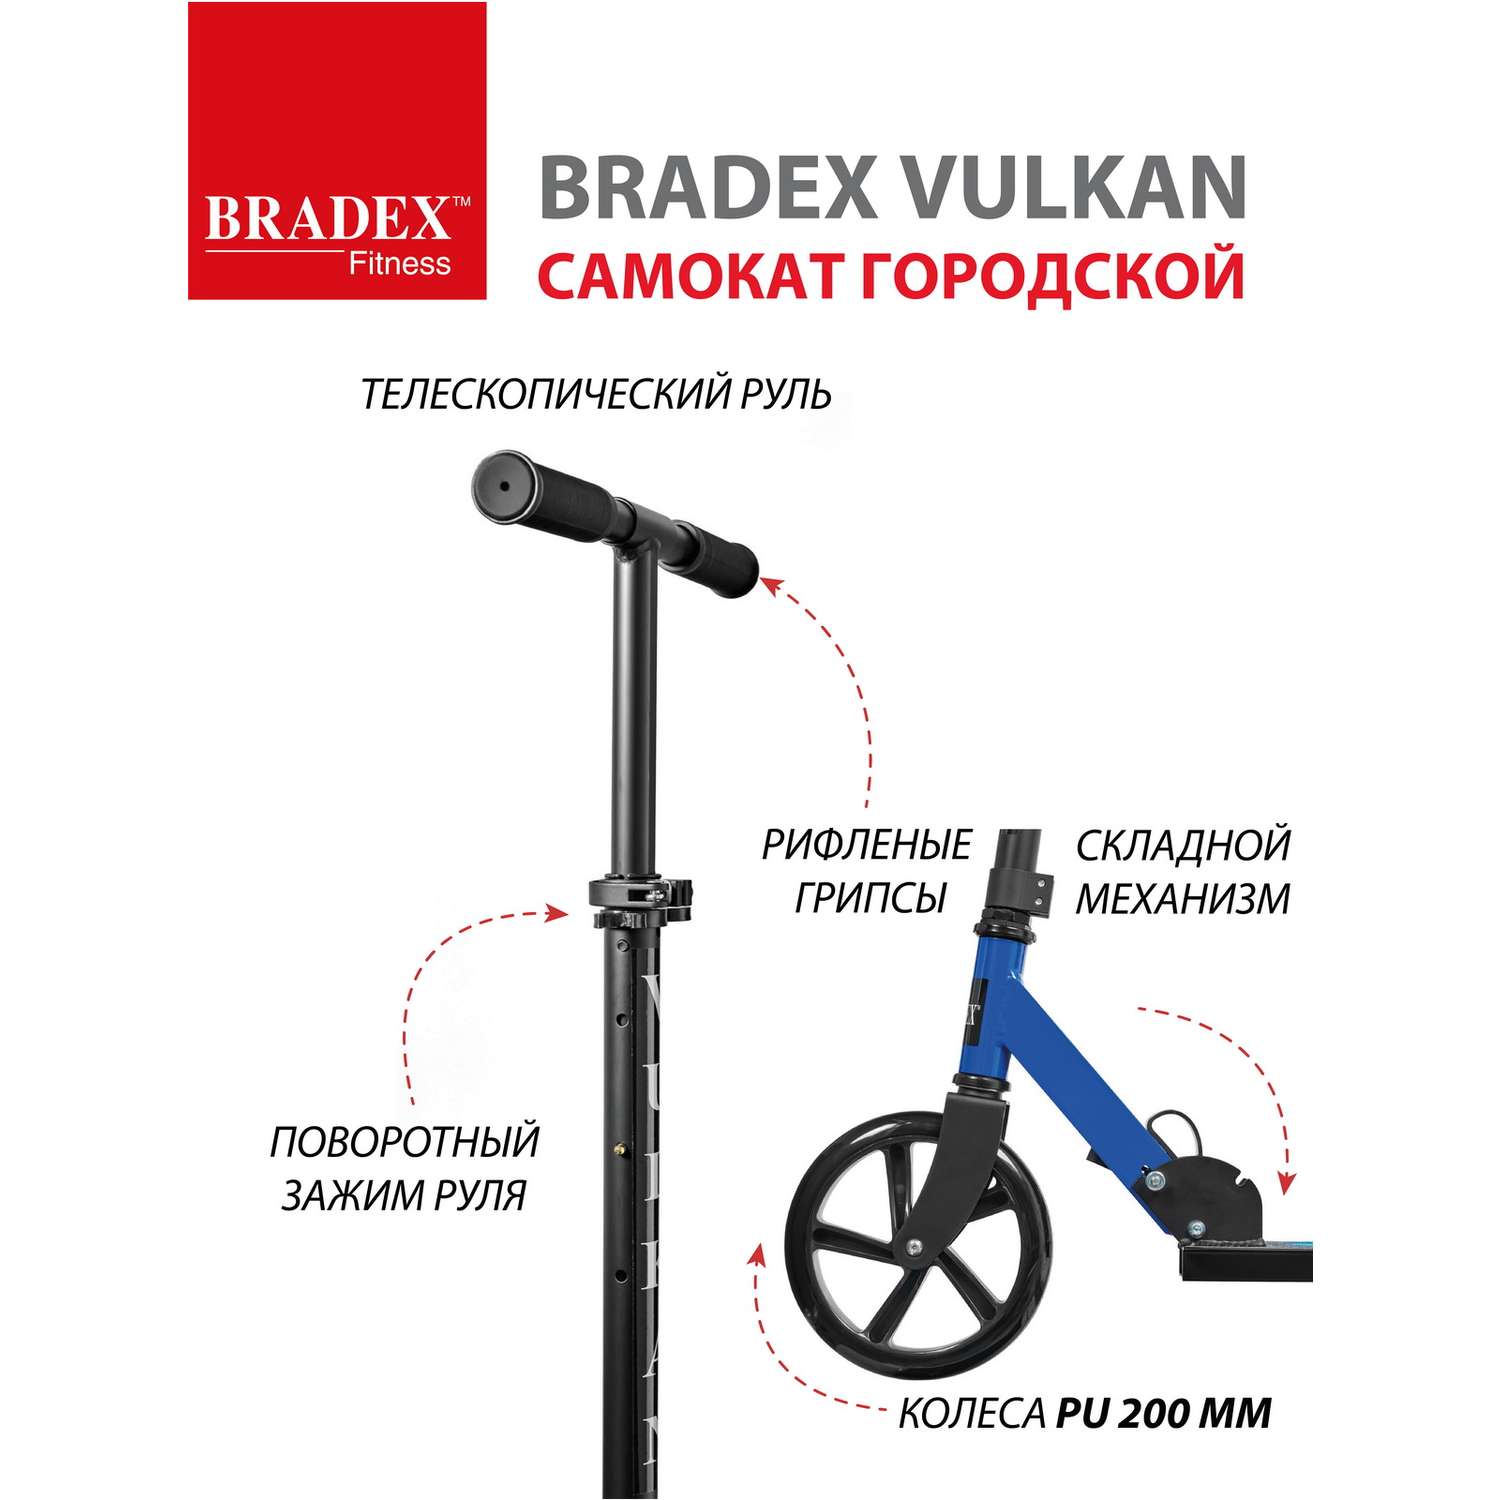 Самокат Bradex городской колеса 200 мм VULKAN - фото 4